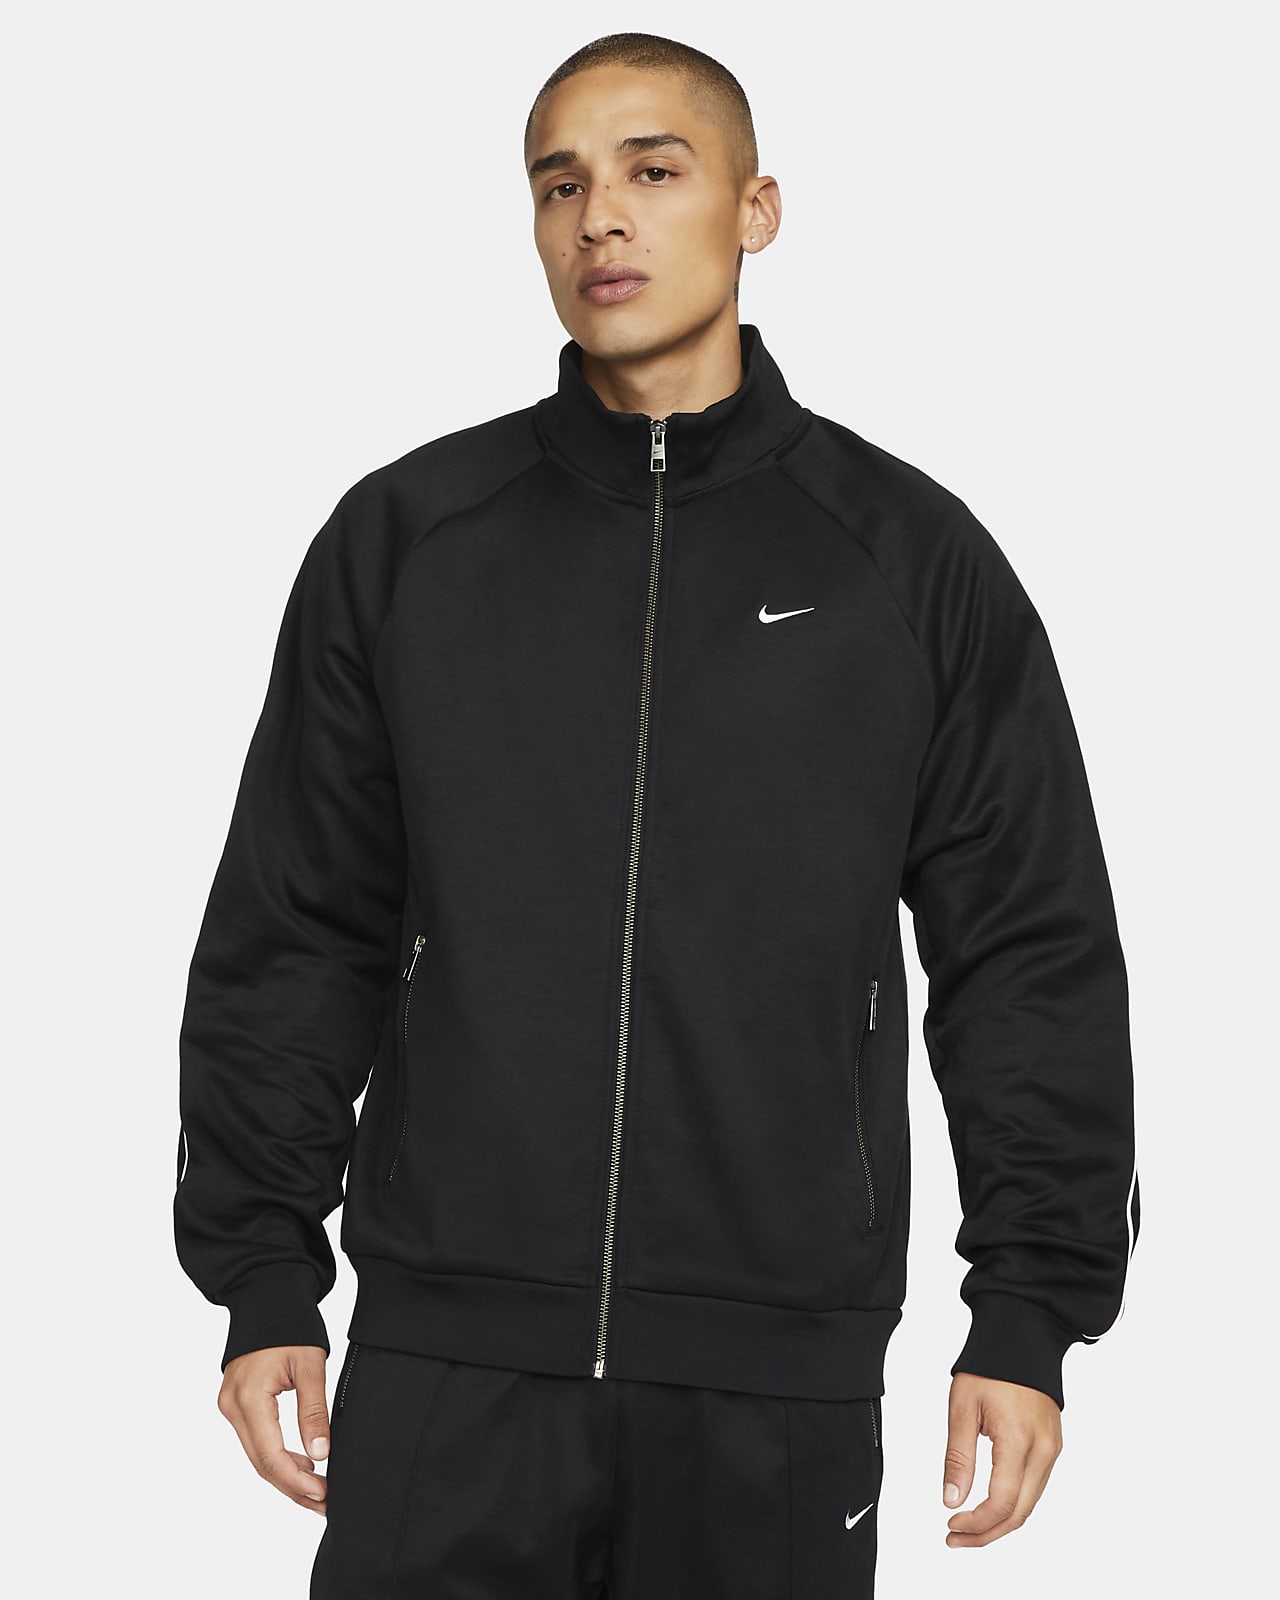 Sportswear Authentics Jacket. Nike IL